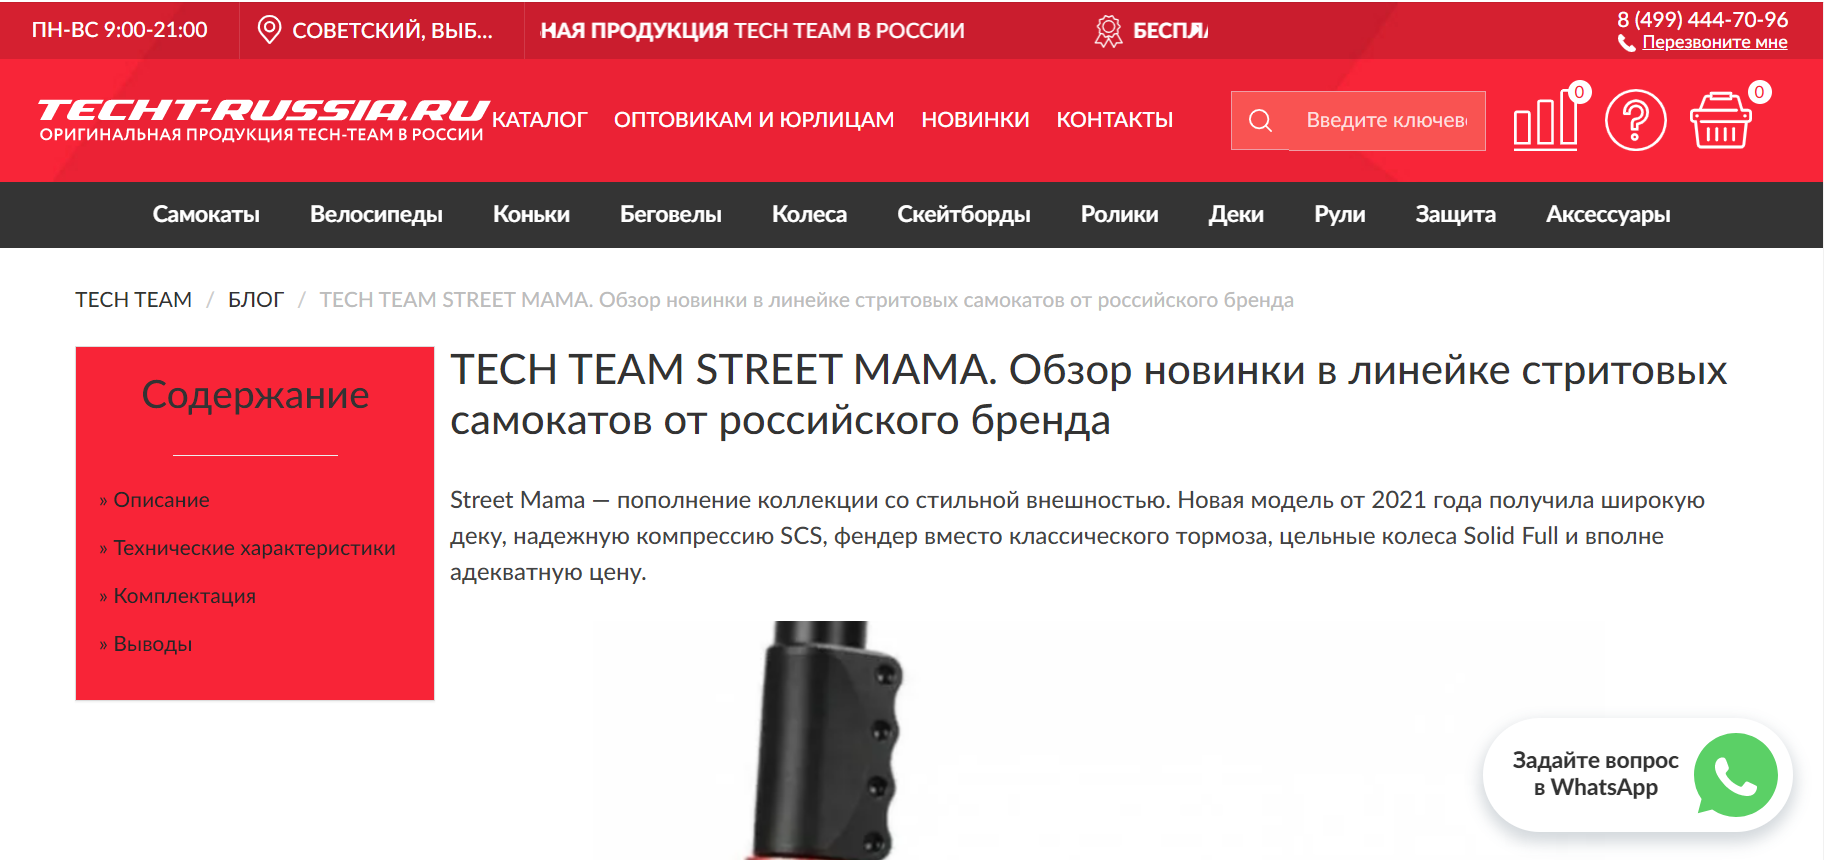 Tech Team Street Mama. Обзор новинки в линейке стритовых самокатов от российского бренда